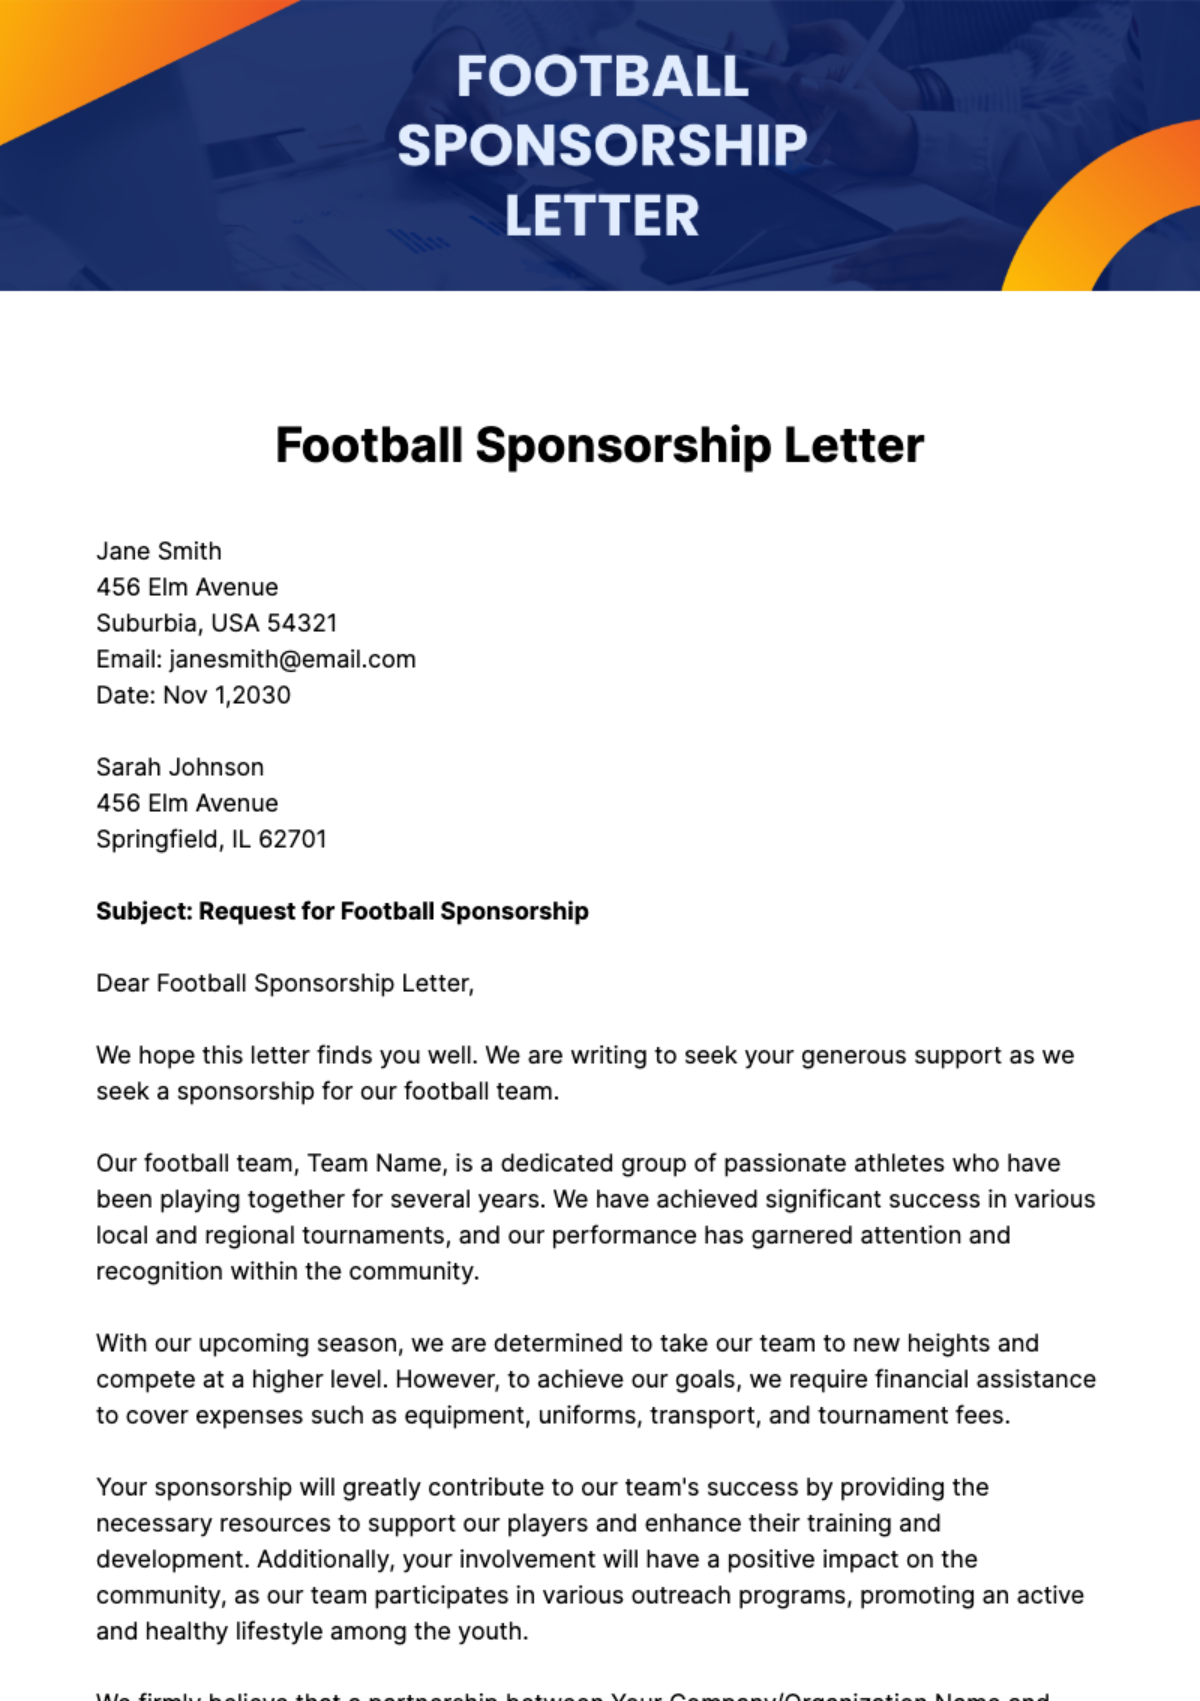 Free Football Sponsorship Letter Template